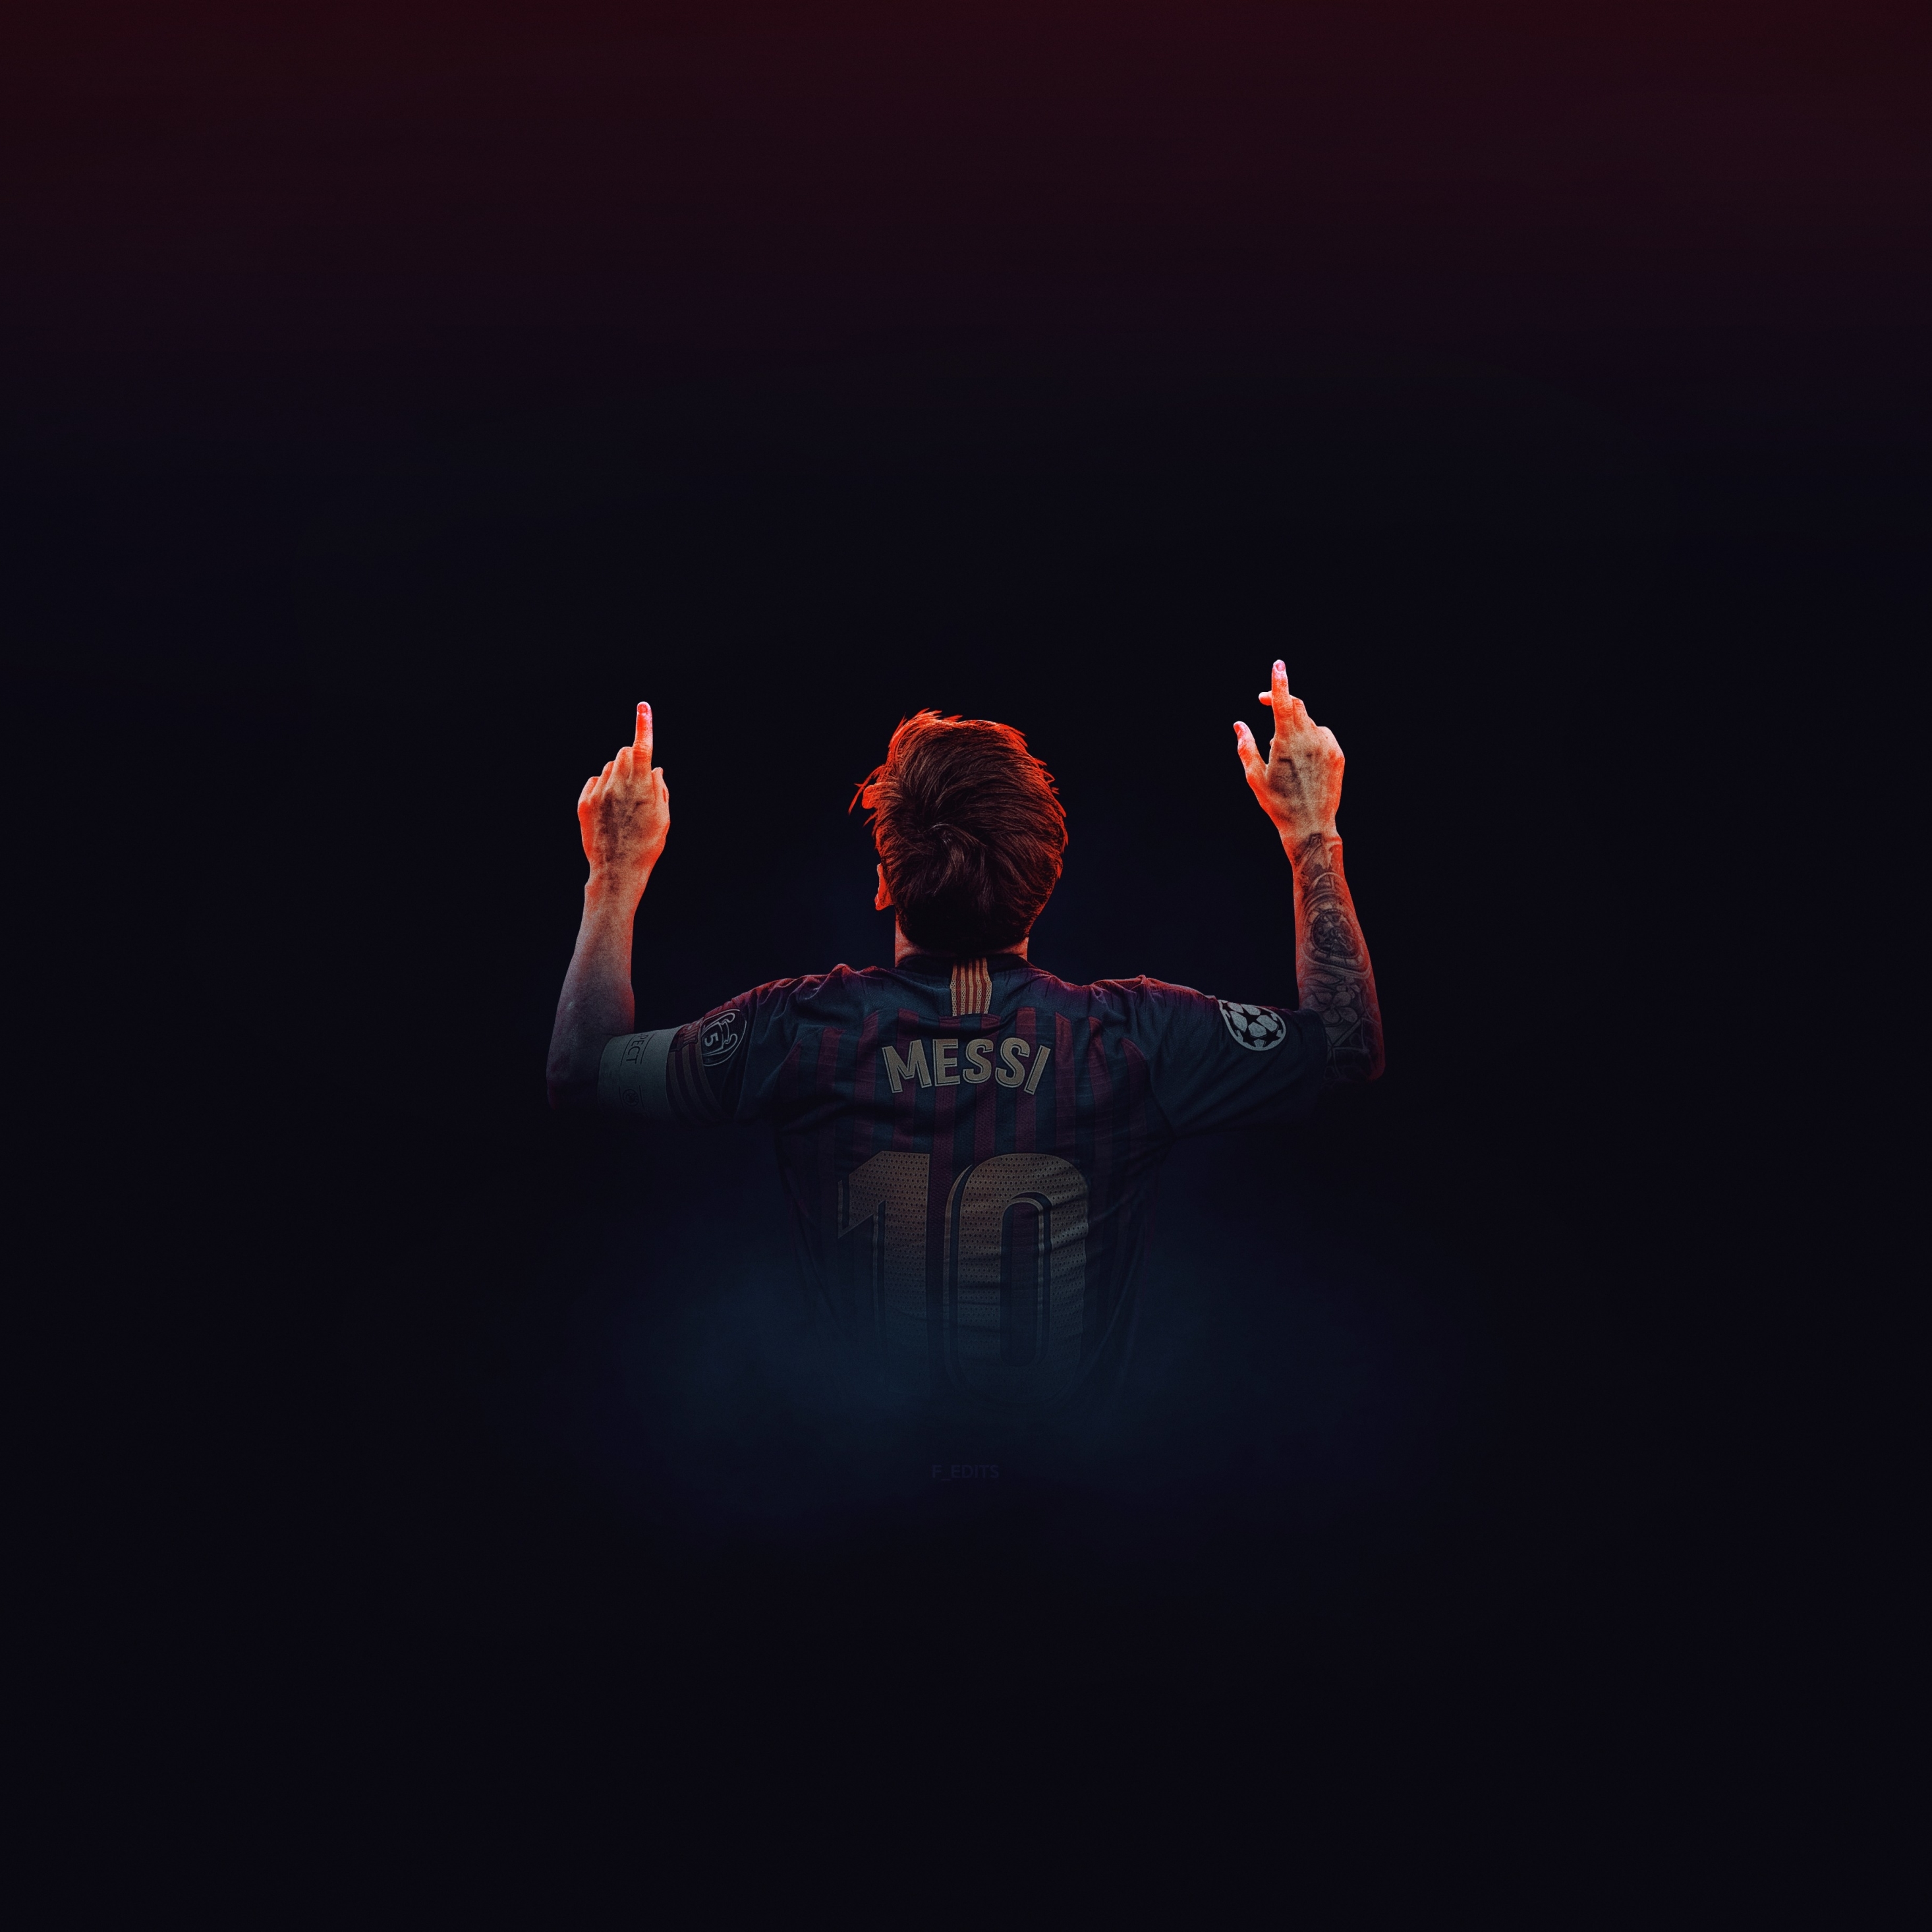 Download Messi 4k Ultra Hd Fistpump Wallpaper | Wallpapers.com